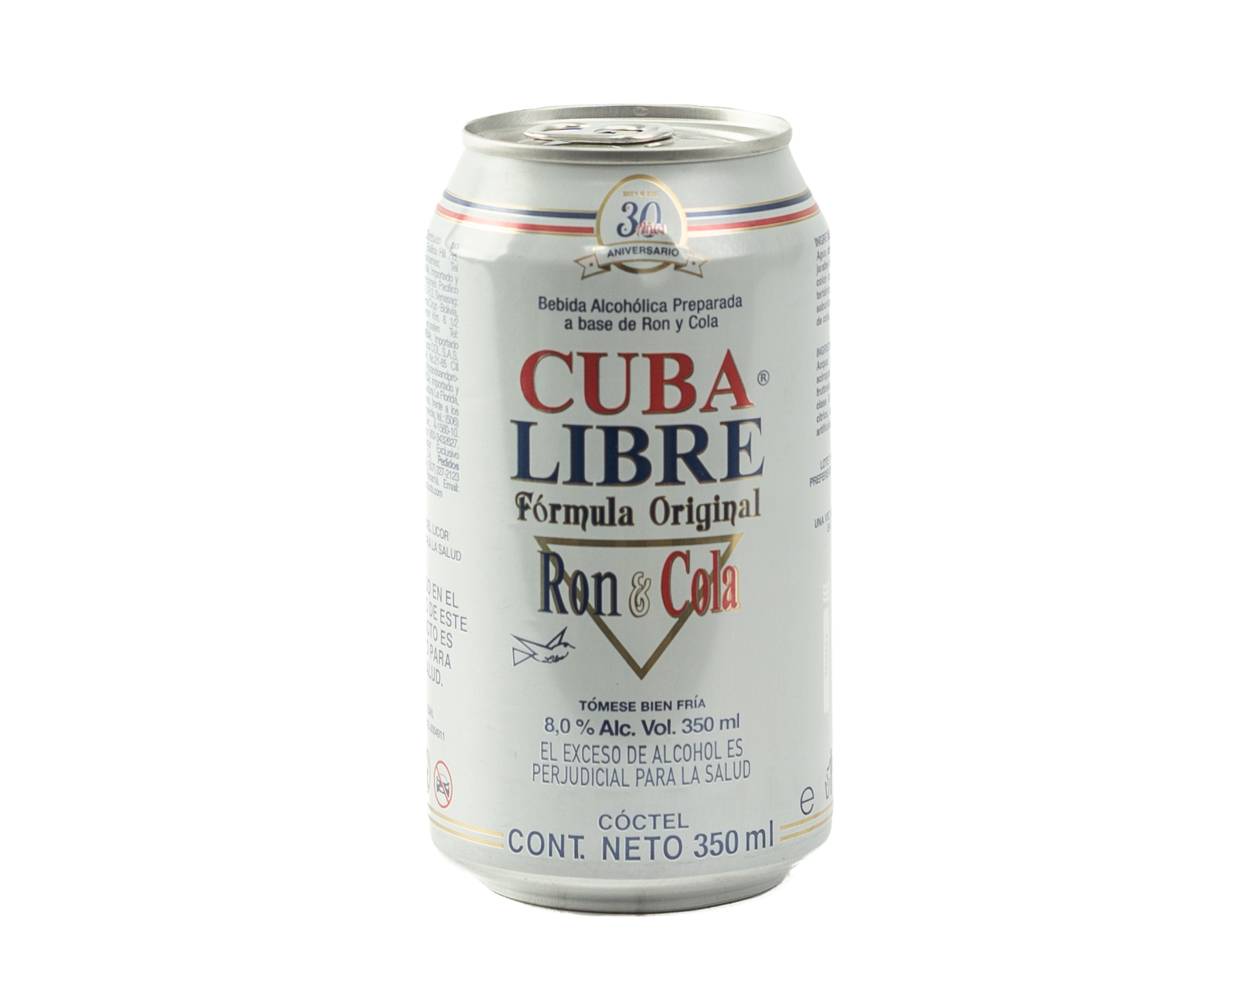 Cuba libre ron & cola (350 ml)